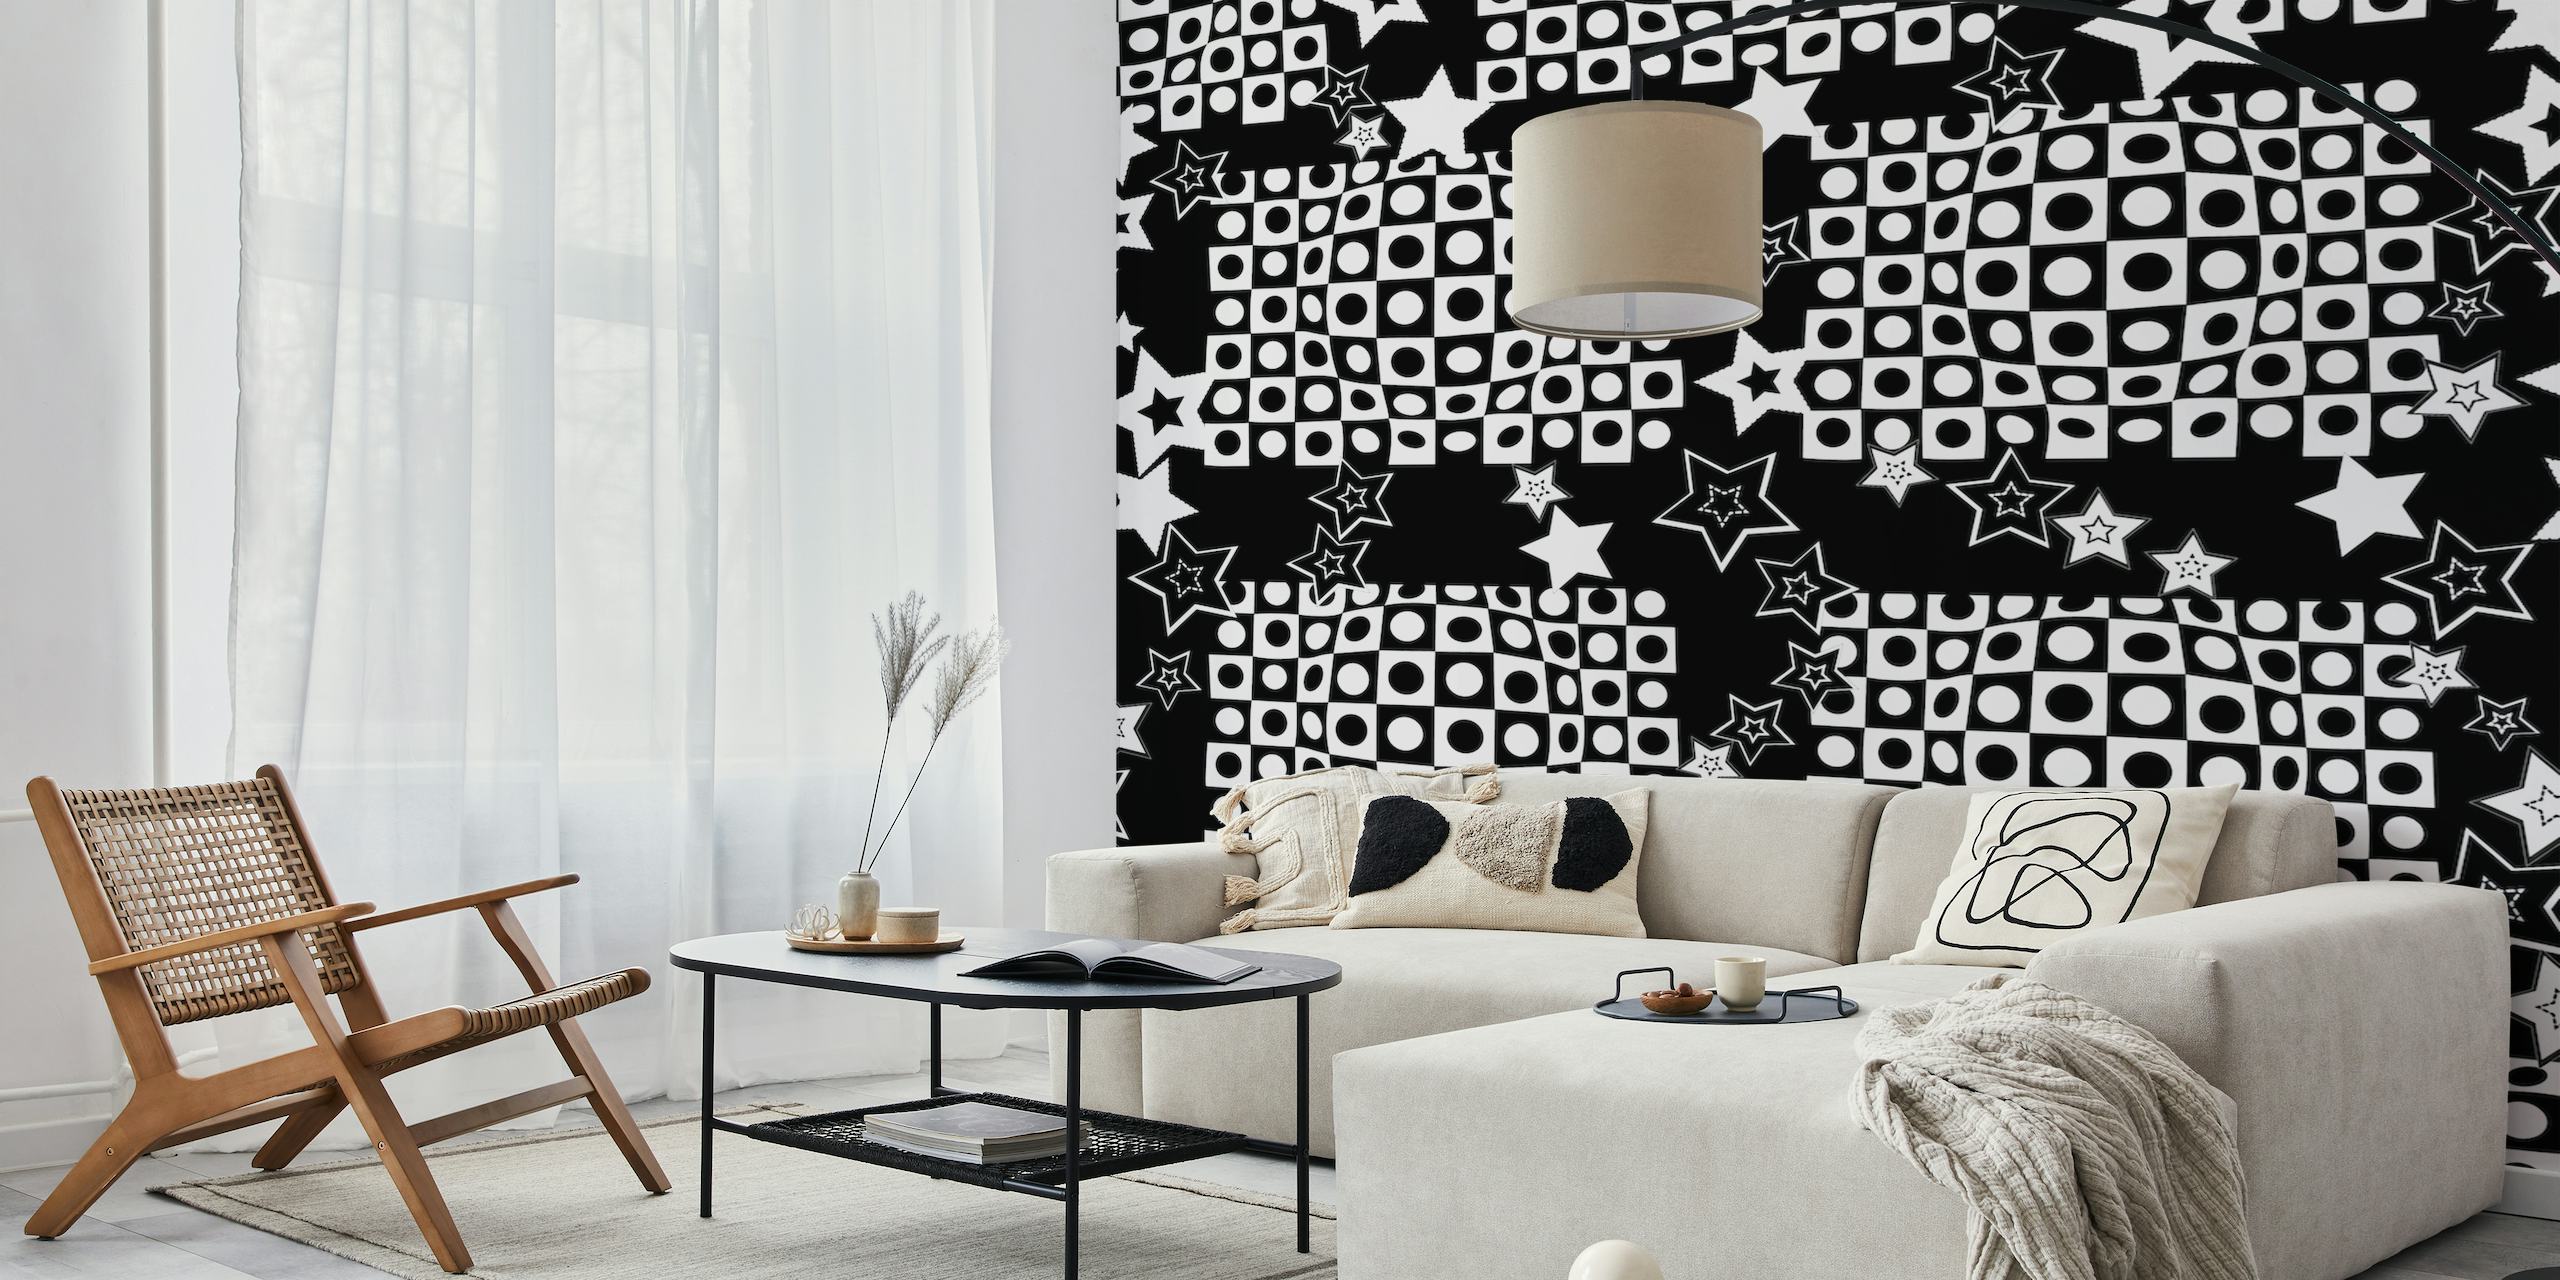 Papier peint illusion d'optique noir et blanc avec des étoiles pour une décoration de chambre moderne